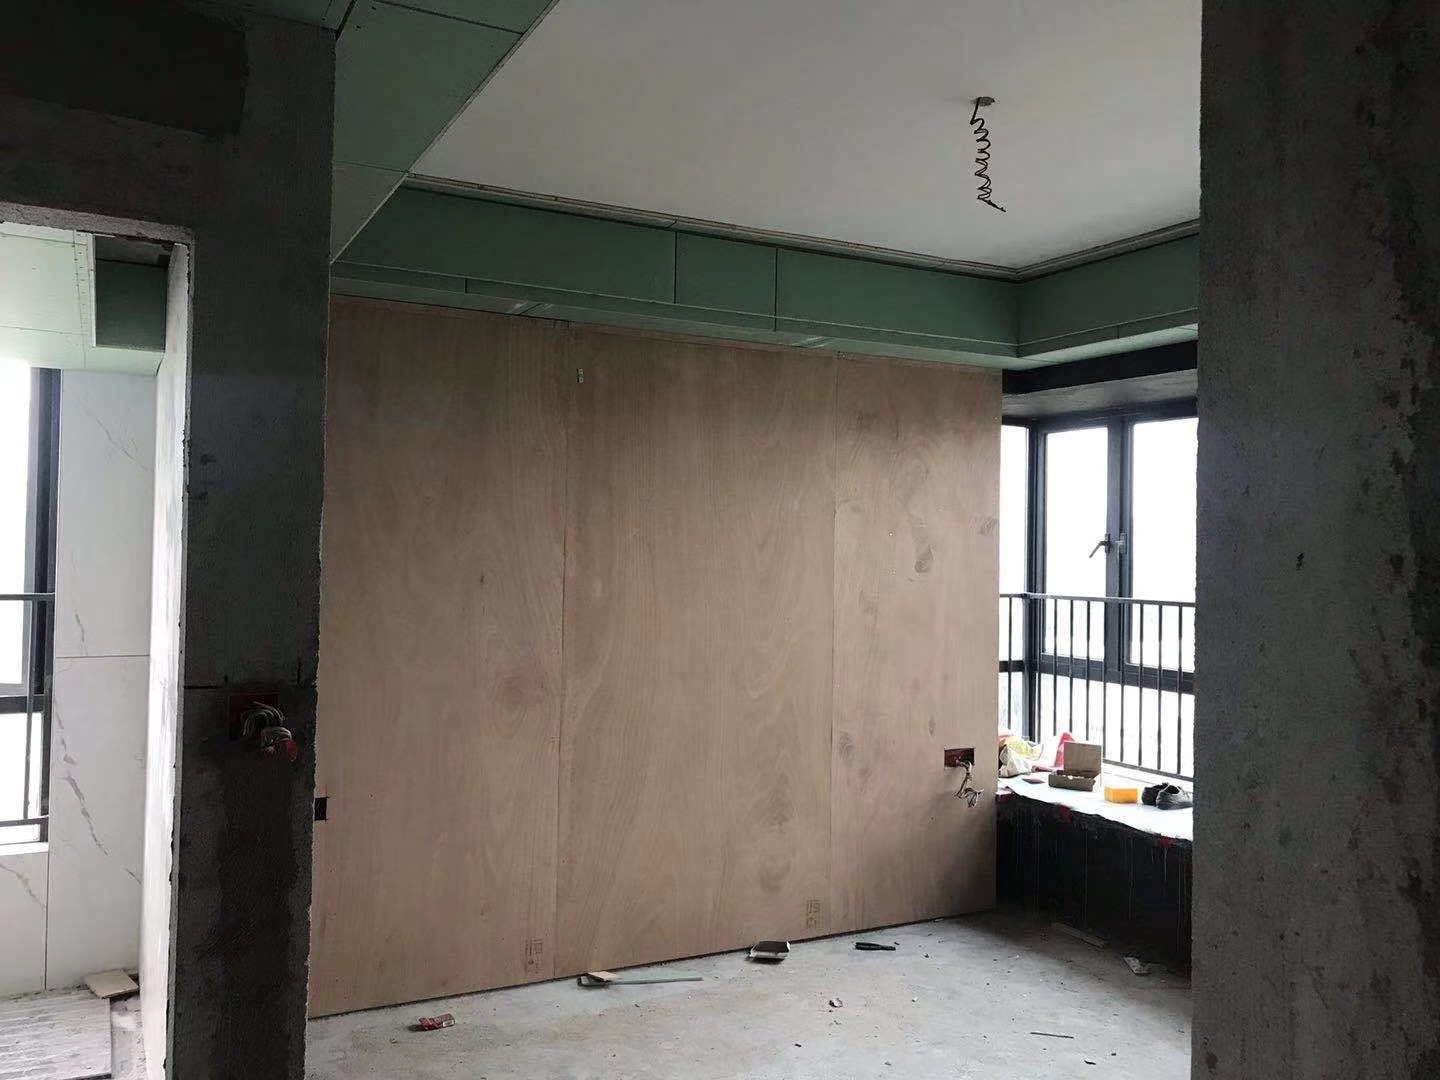 广州家庭半清包施工工程队翻新水电改造刷墙漆木工定制二手房装修